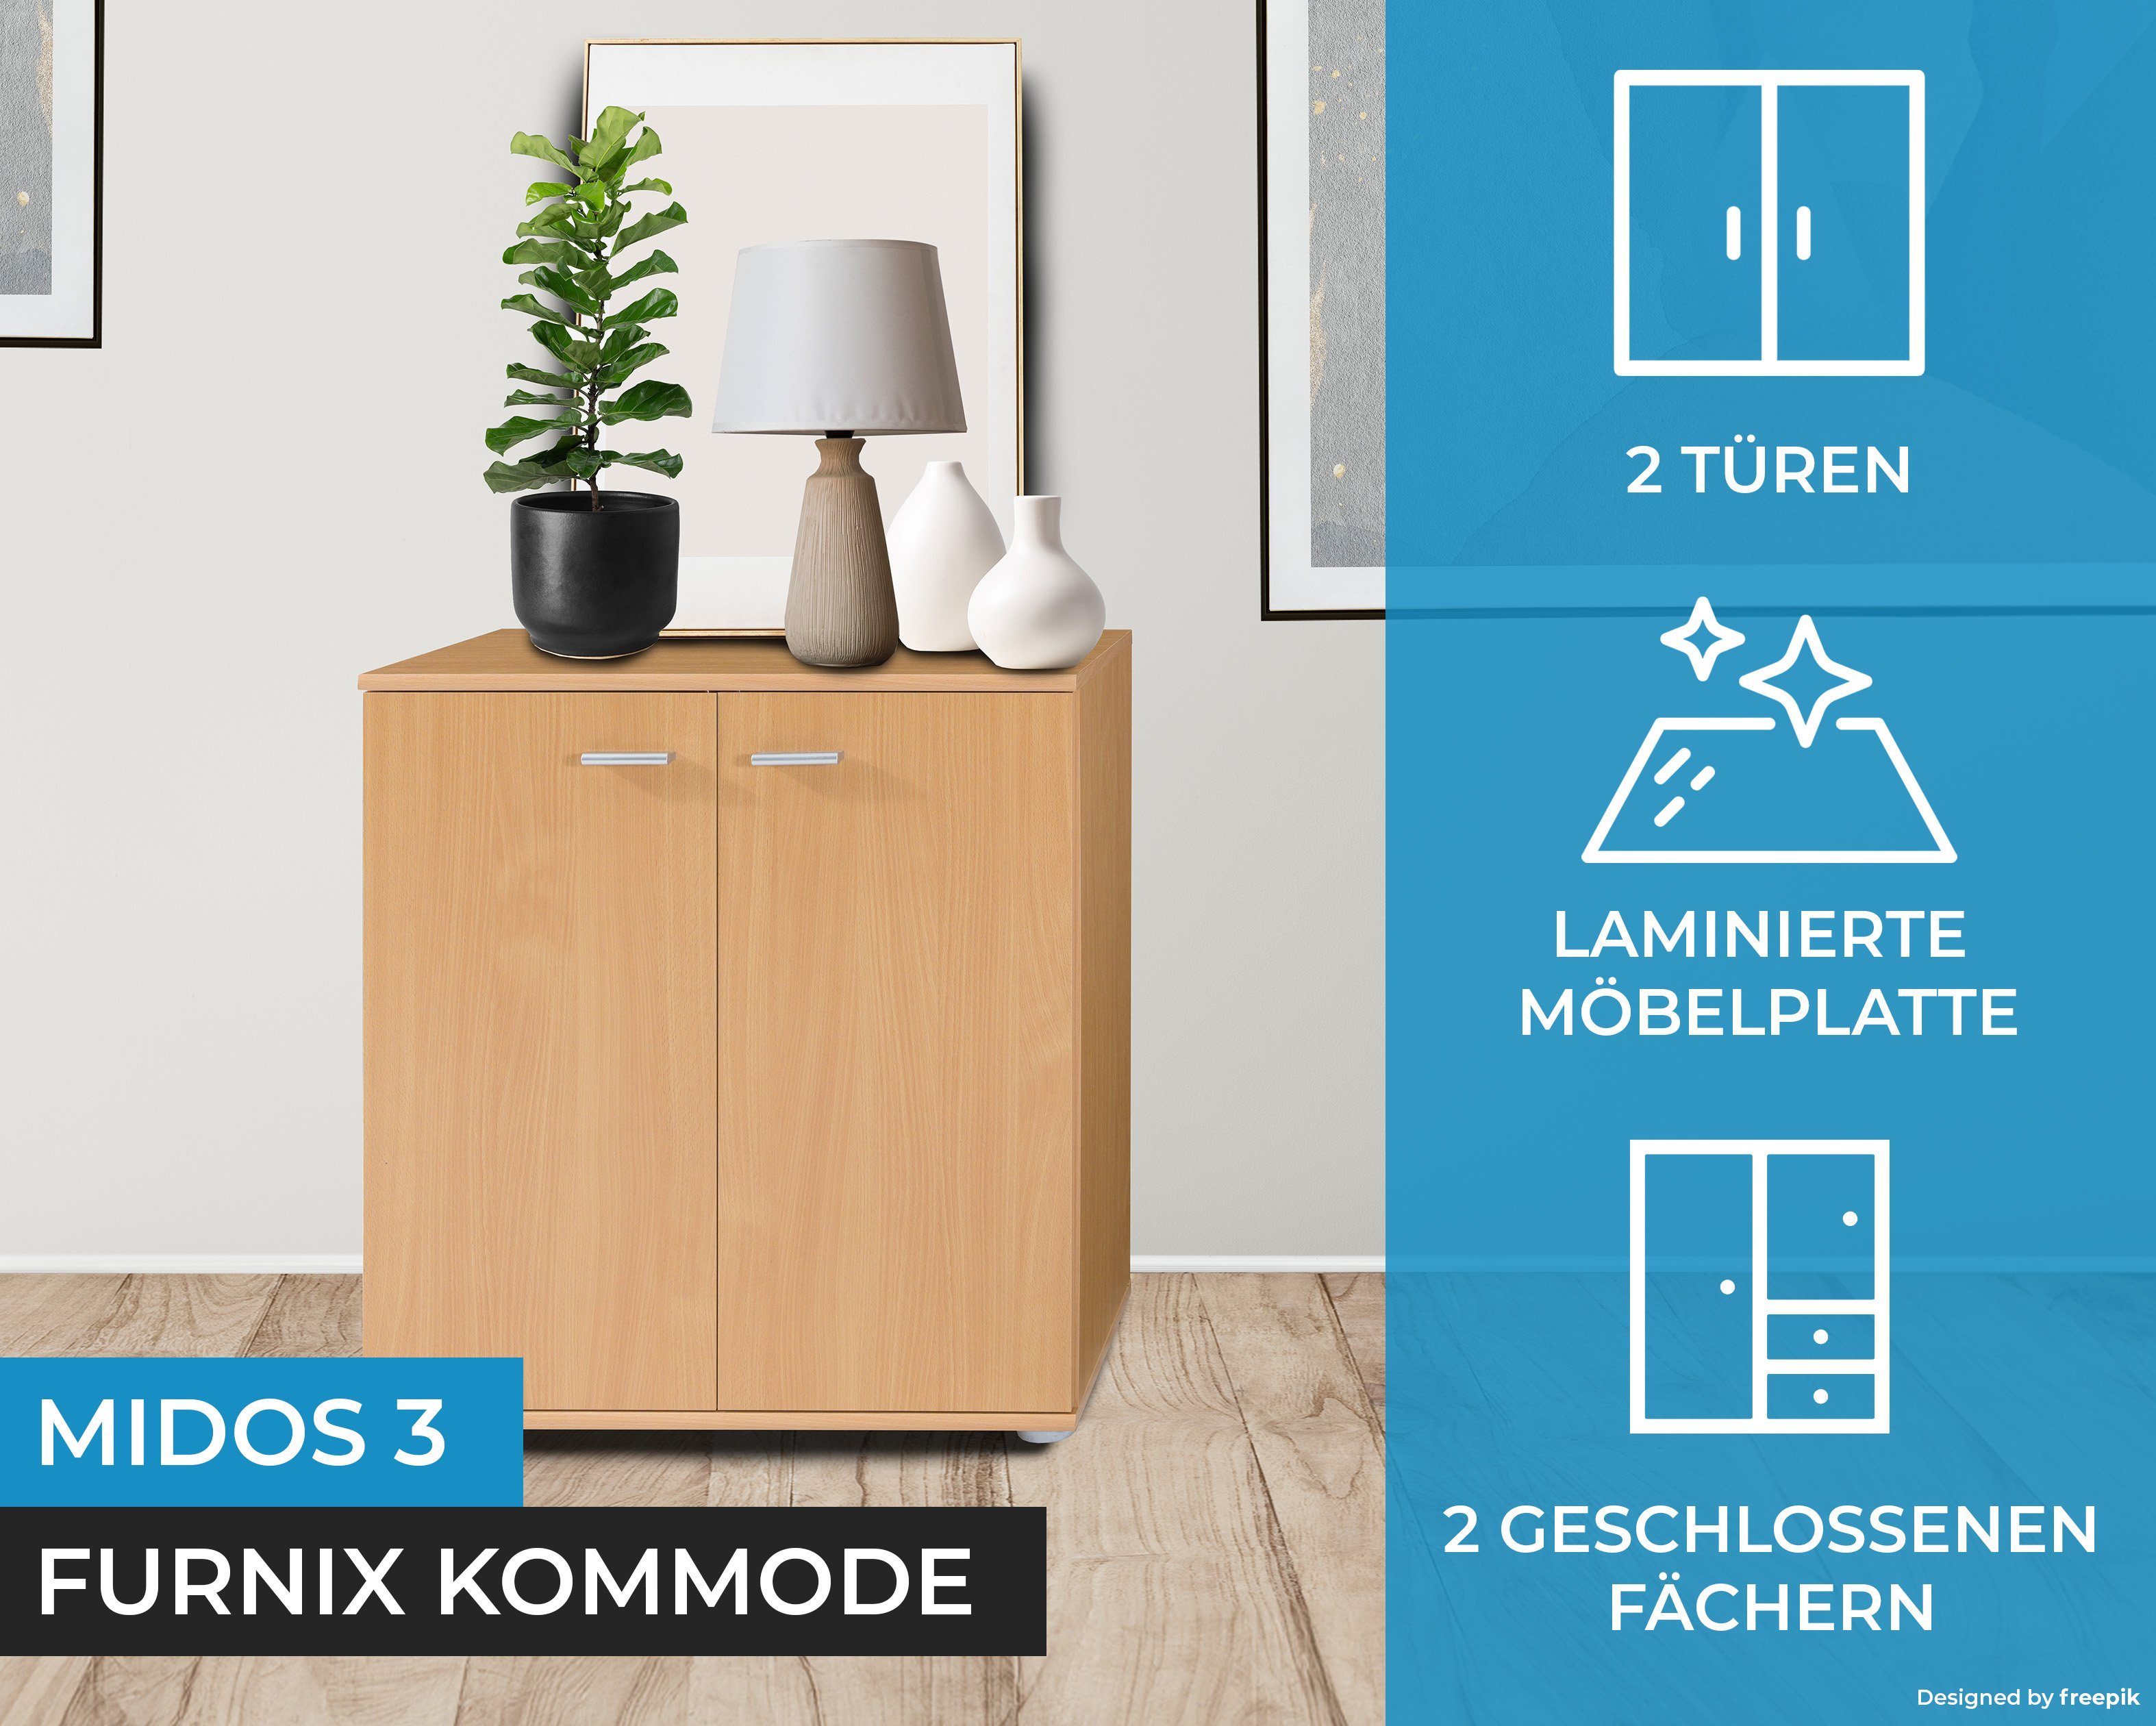 Furnix Kommode Sideboard fürs Wohnzimmer Buche Midos mit modern 2 Türen 3